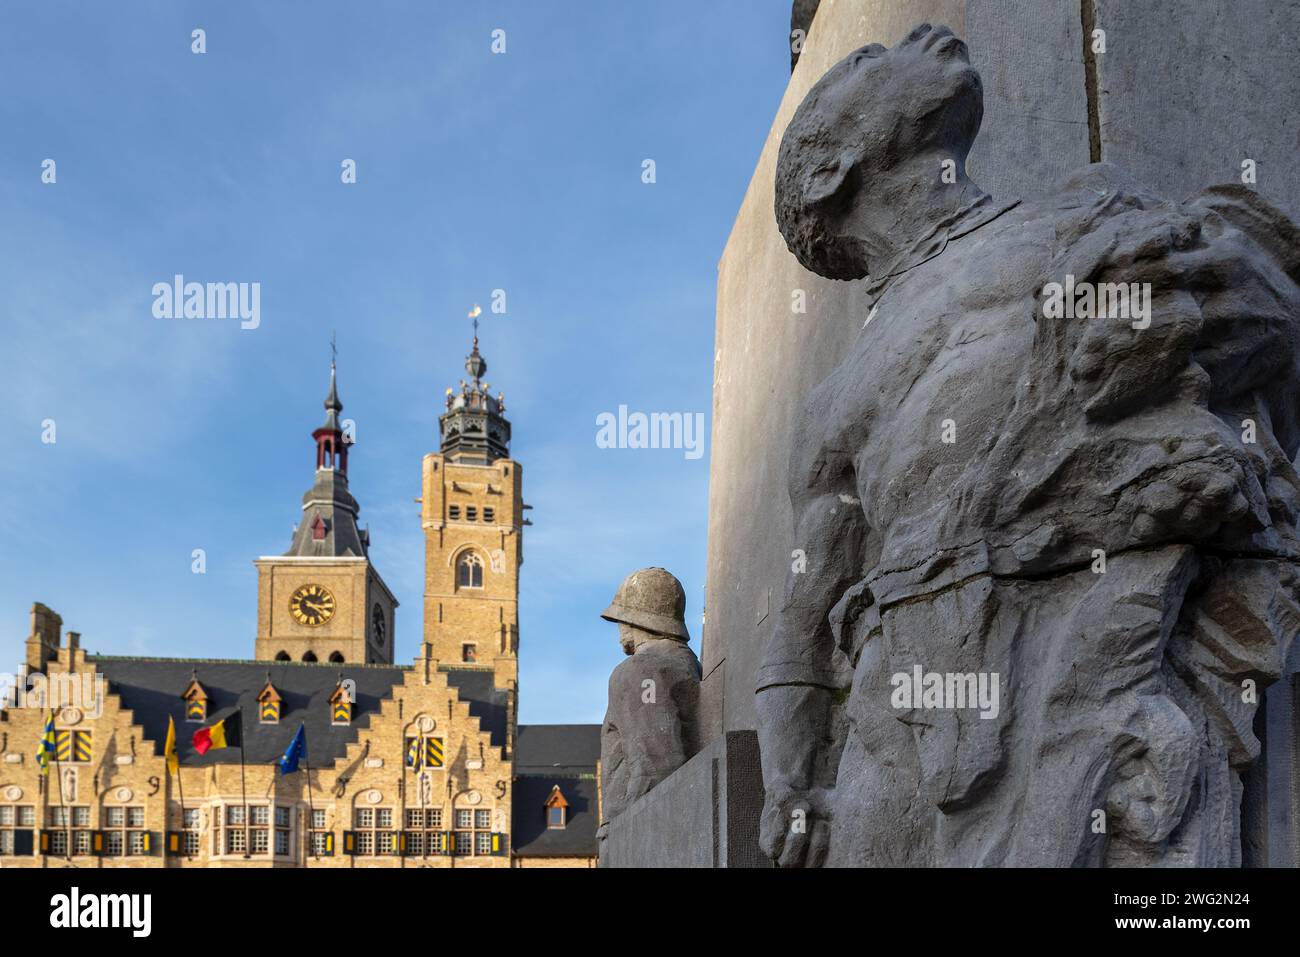 Détail de la statue Jacques de Dixmude montrant l'esclave africain sur la place du marché avec la mairie et belfy dans la ville de Diksmuide, Flandre Occidentale, Belgique Banque D'Images